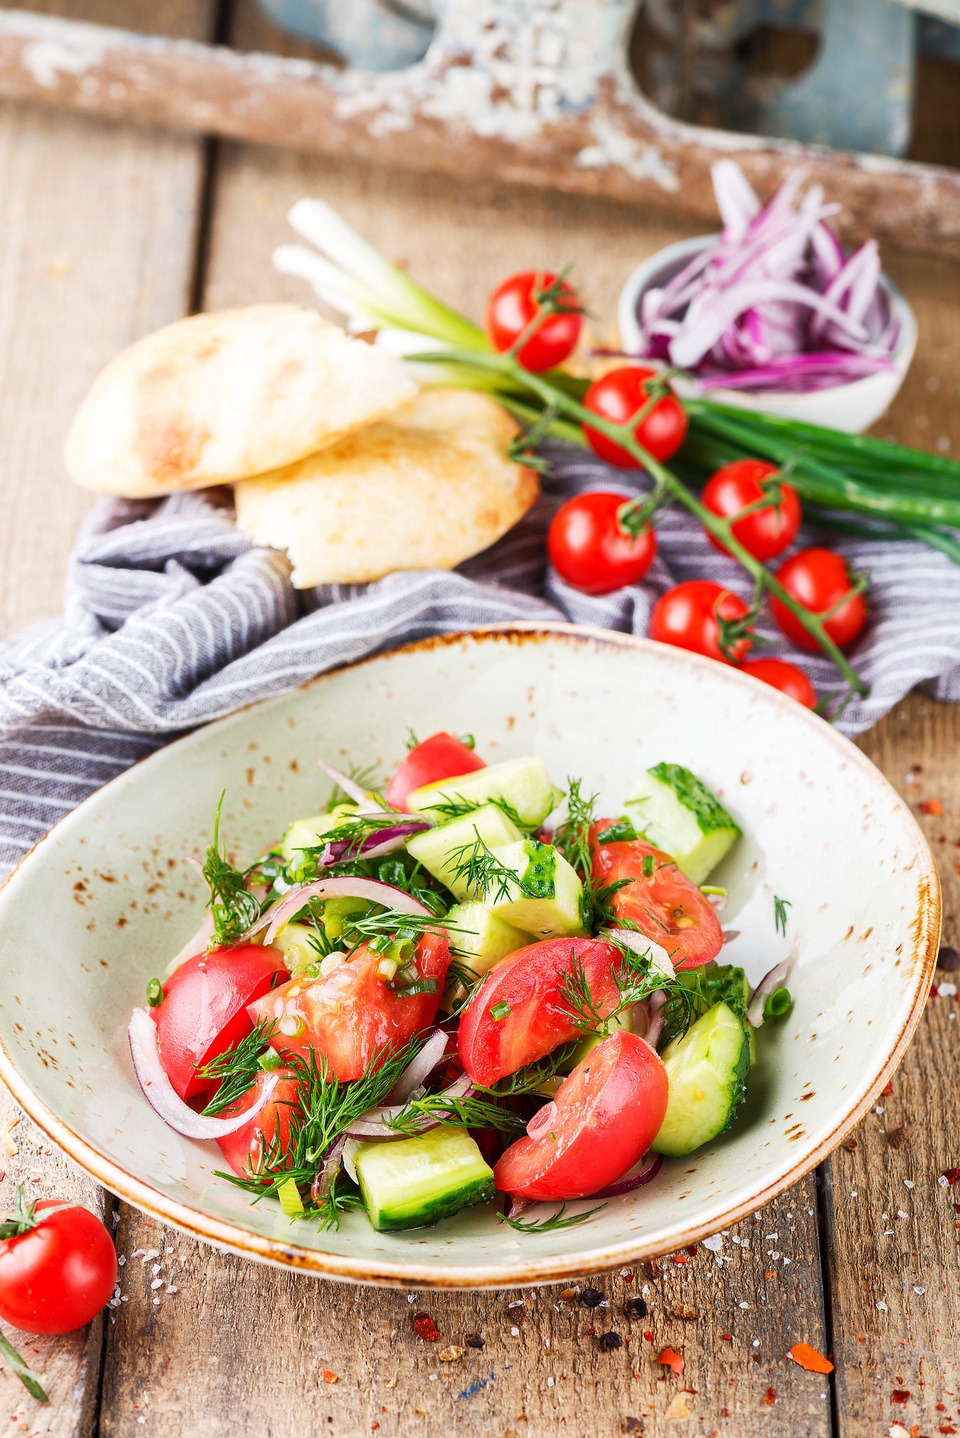 Салат из свежих огурцов с зеленью - 290 ₽, заказать онлайн.